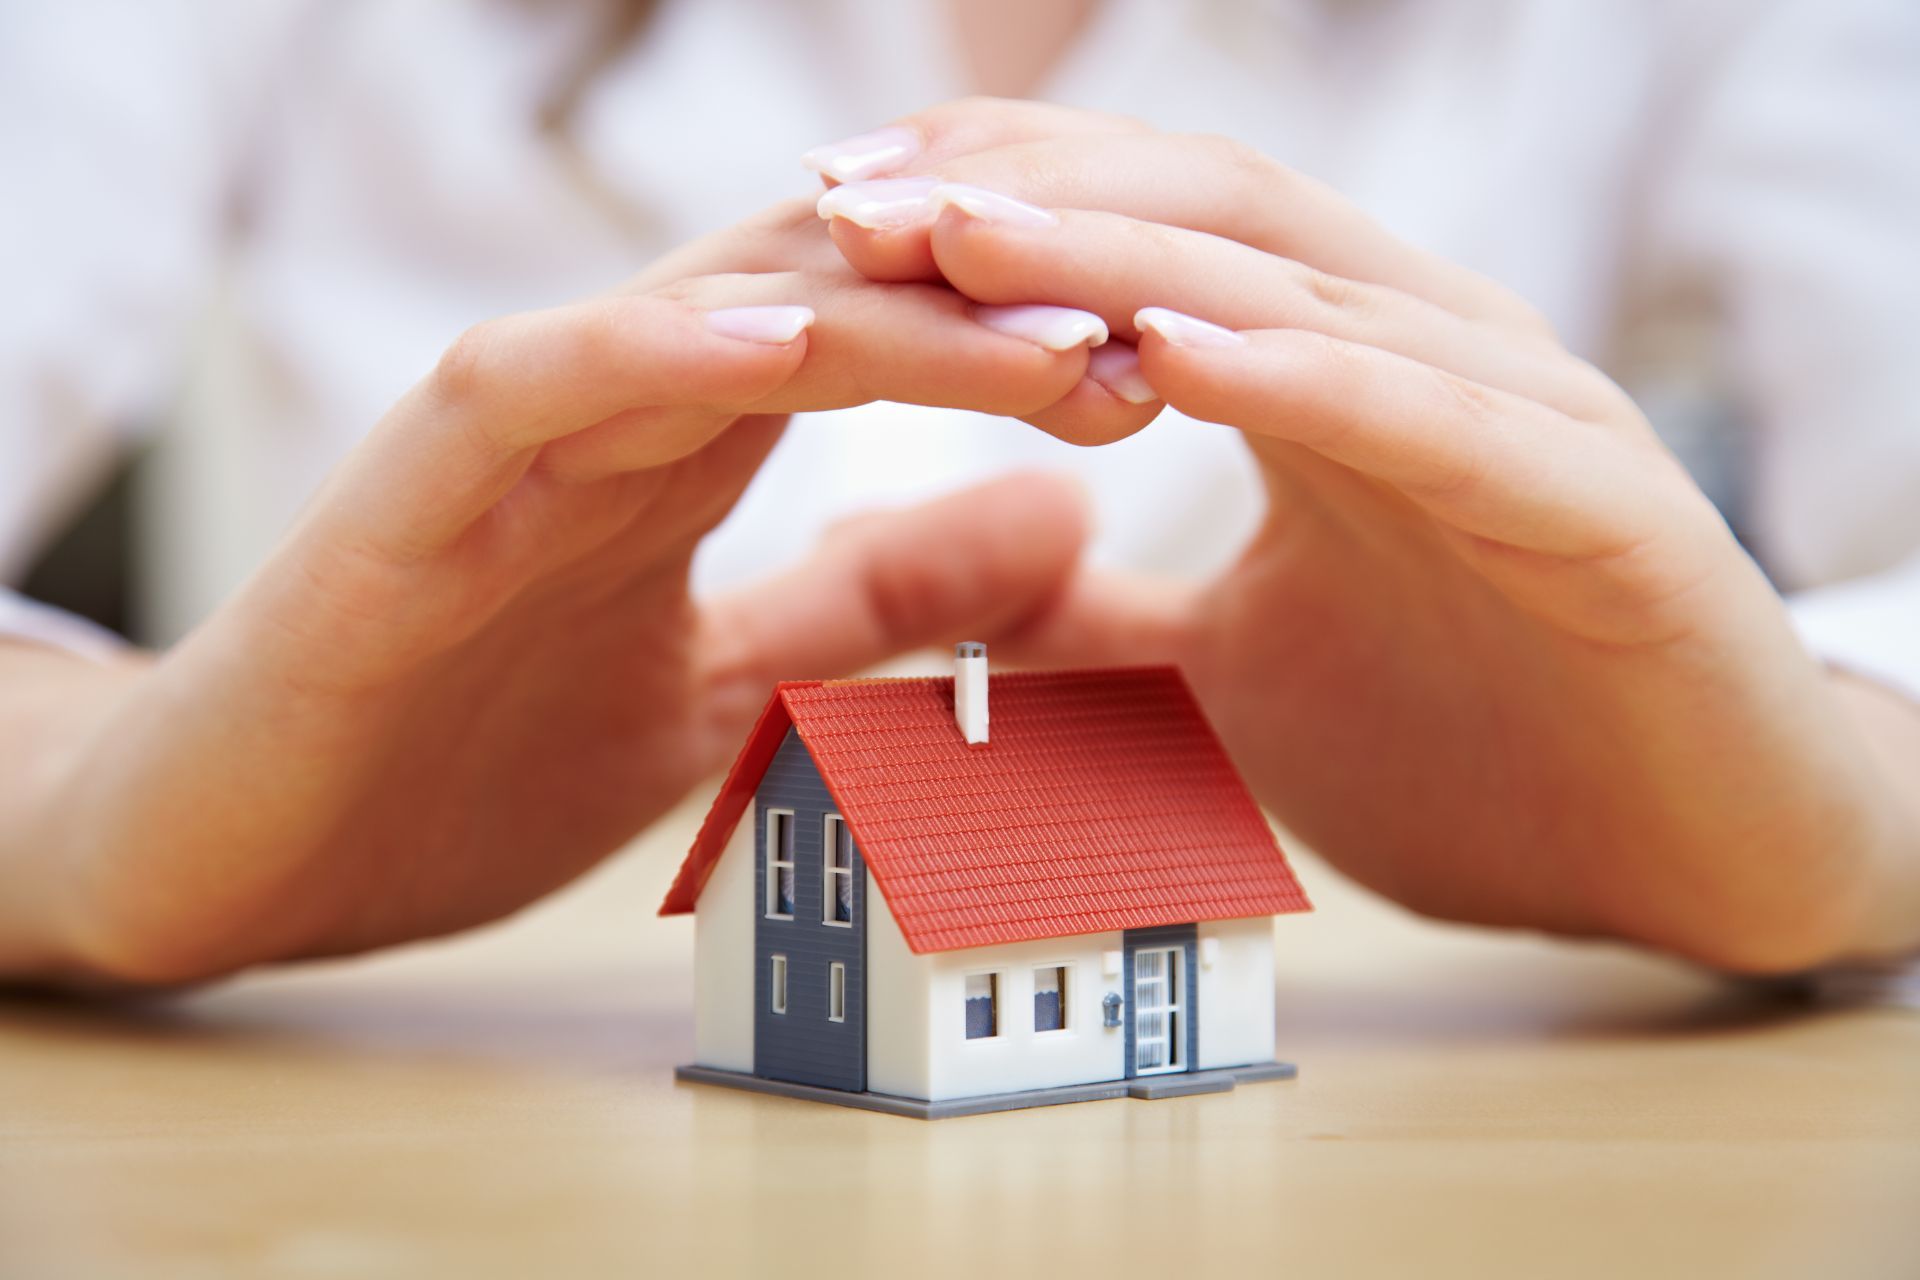 Hands shielding a miniature house